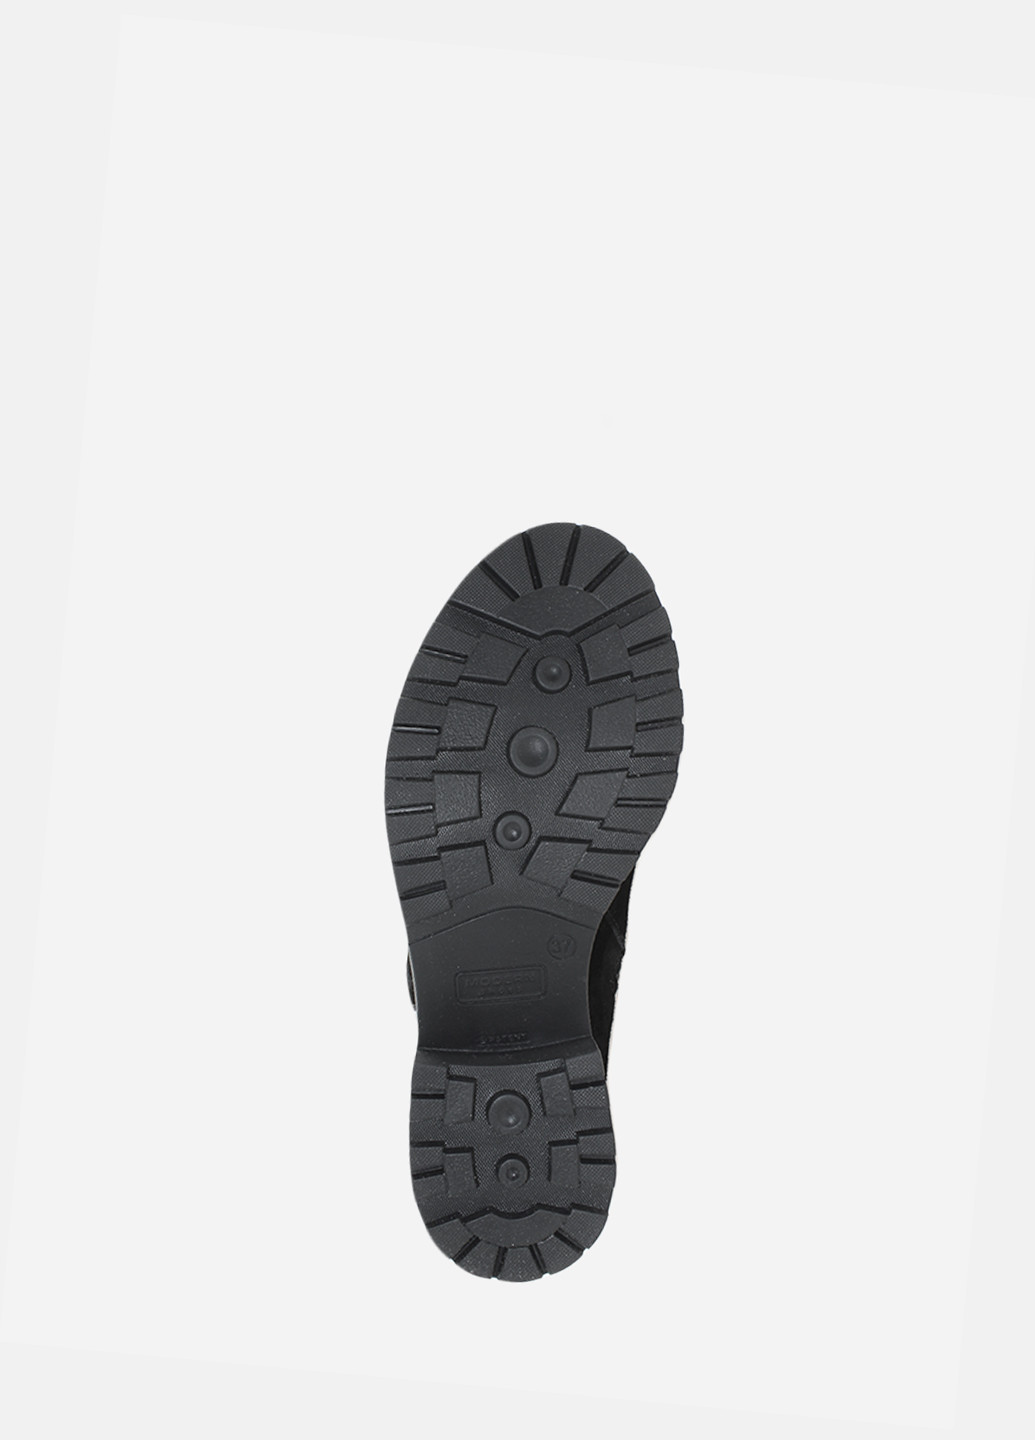 Зимние ботинки rd7846-11 черный Darini из натуральной замши